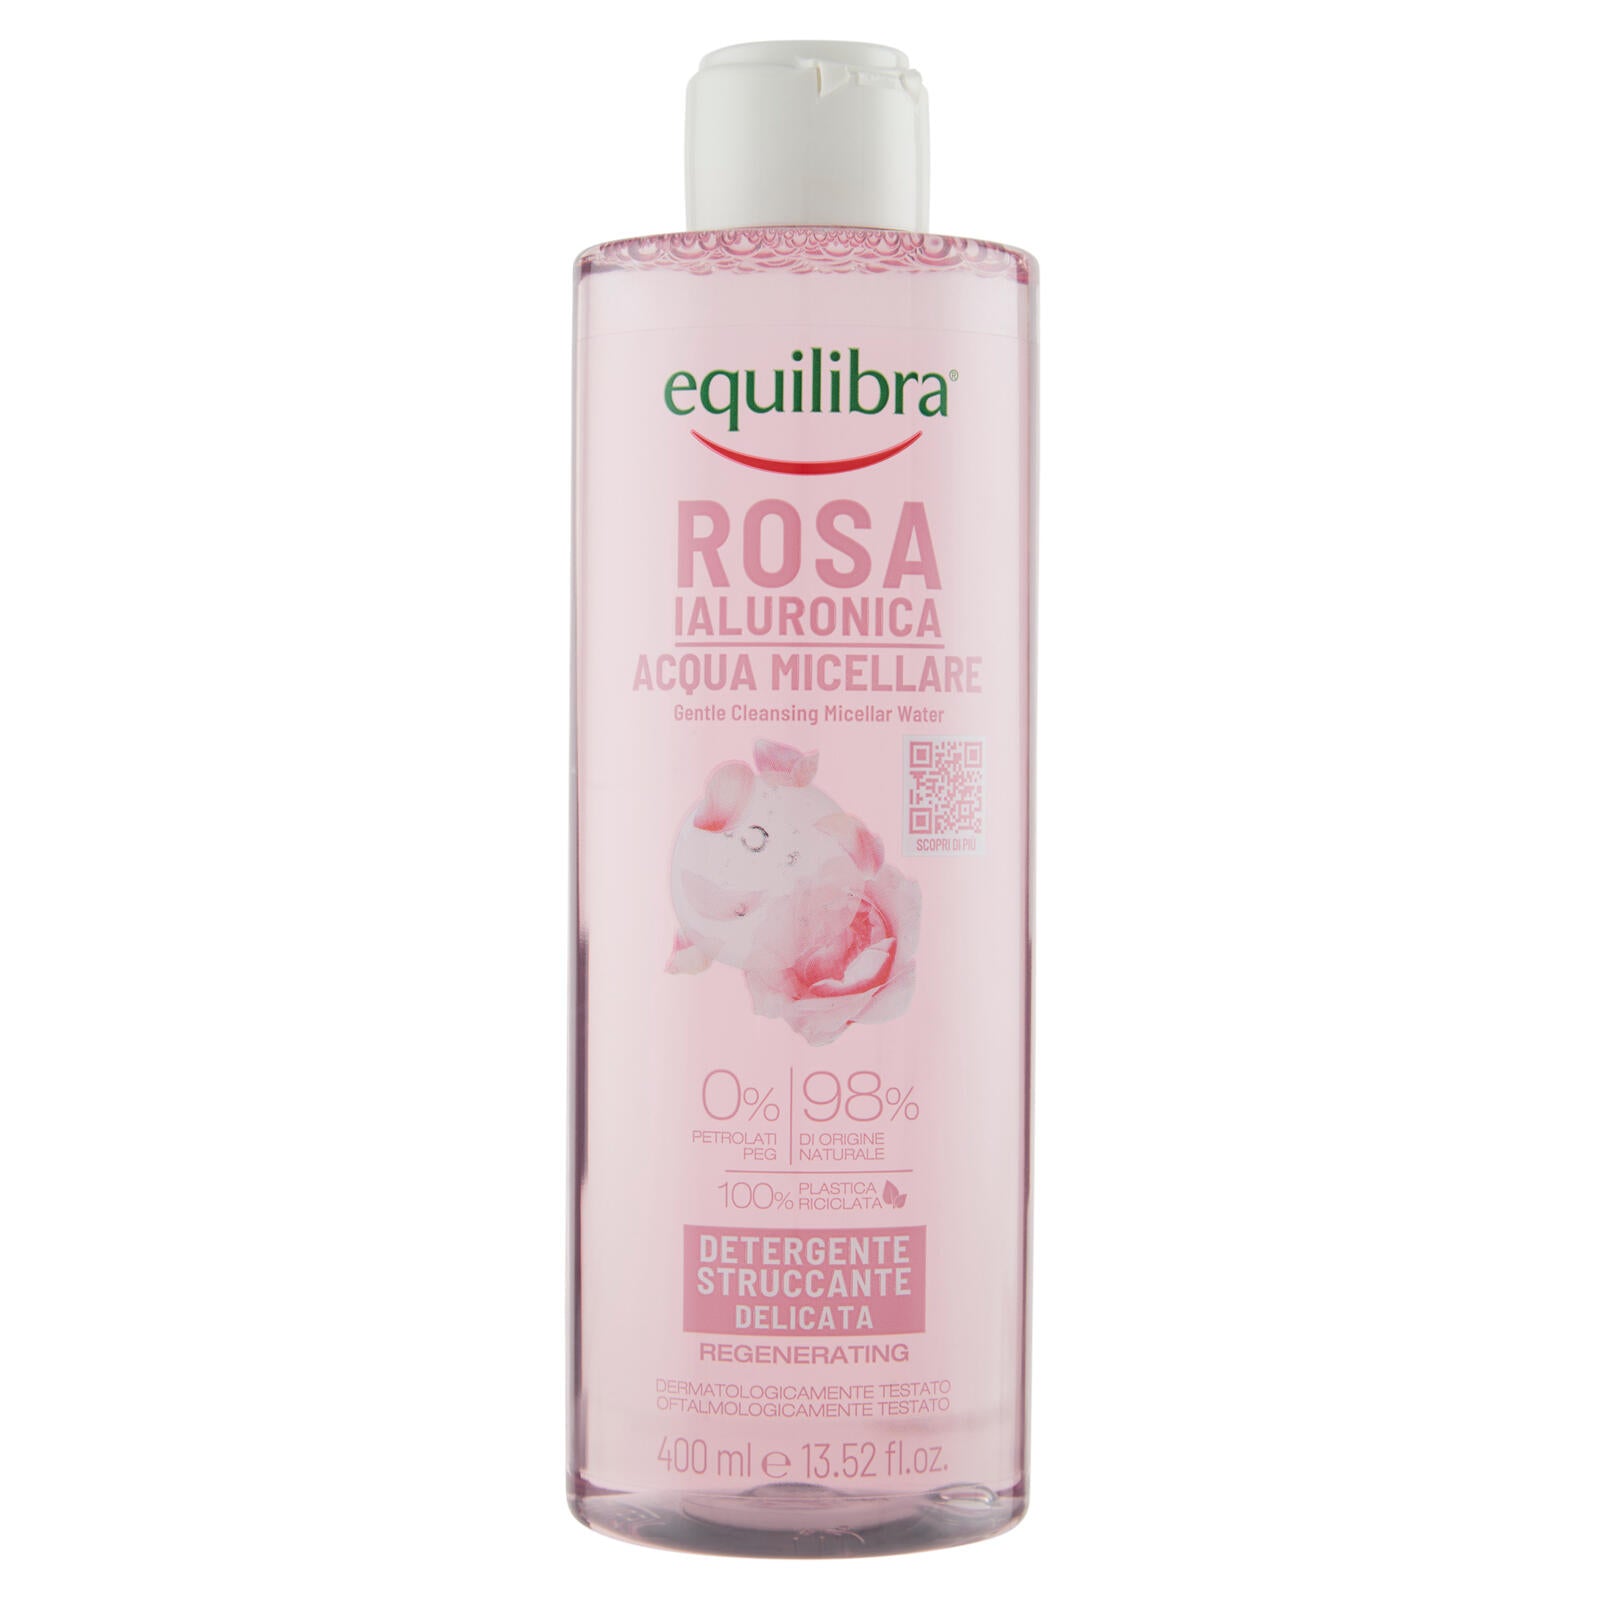 equilibra Rosa Ialuronica Acqua Micellare Detergente Struccante Delicata 400 ml